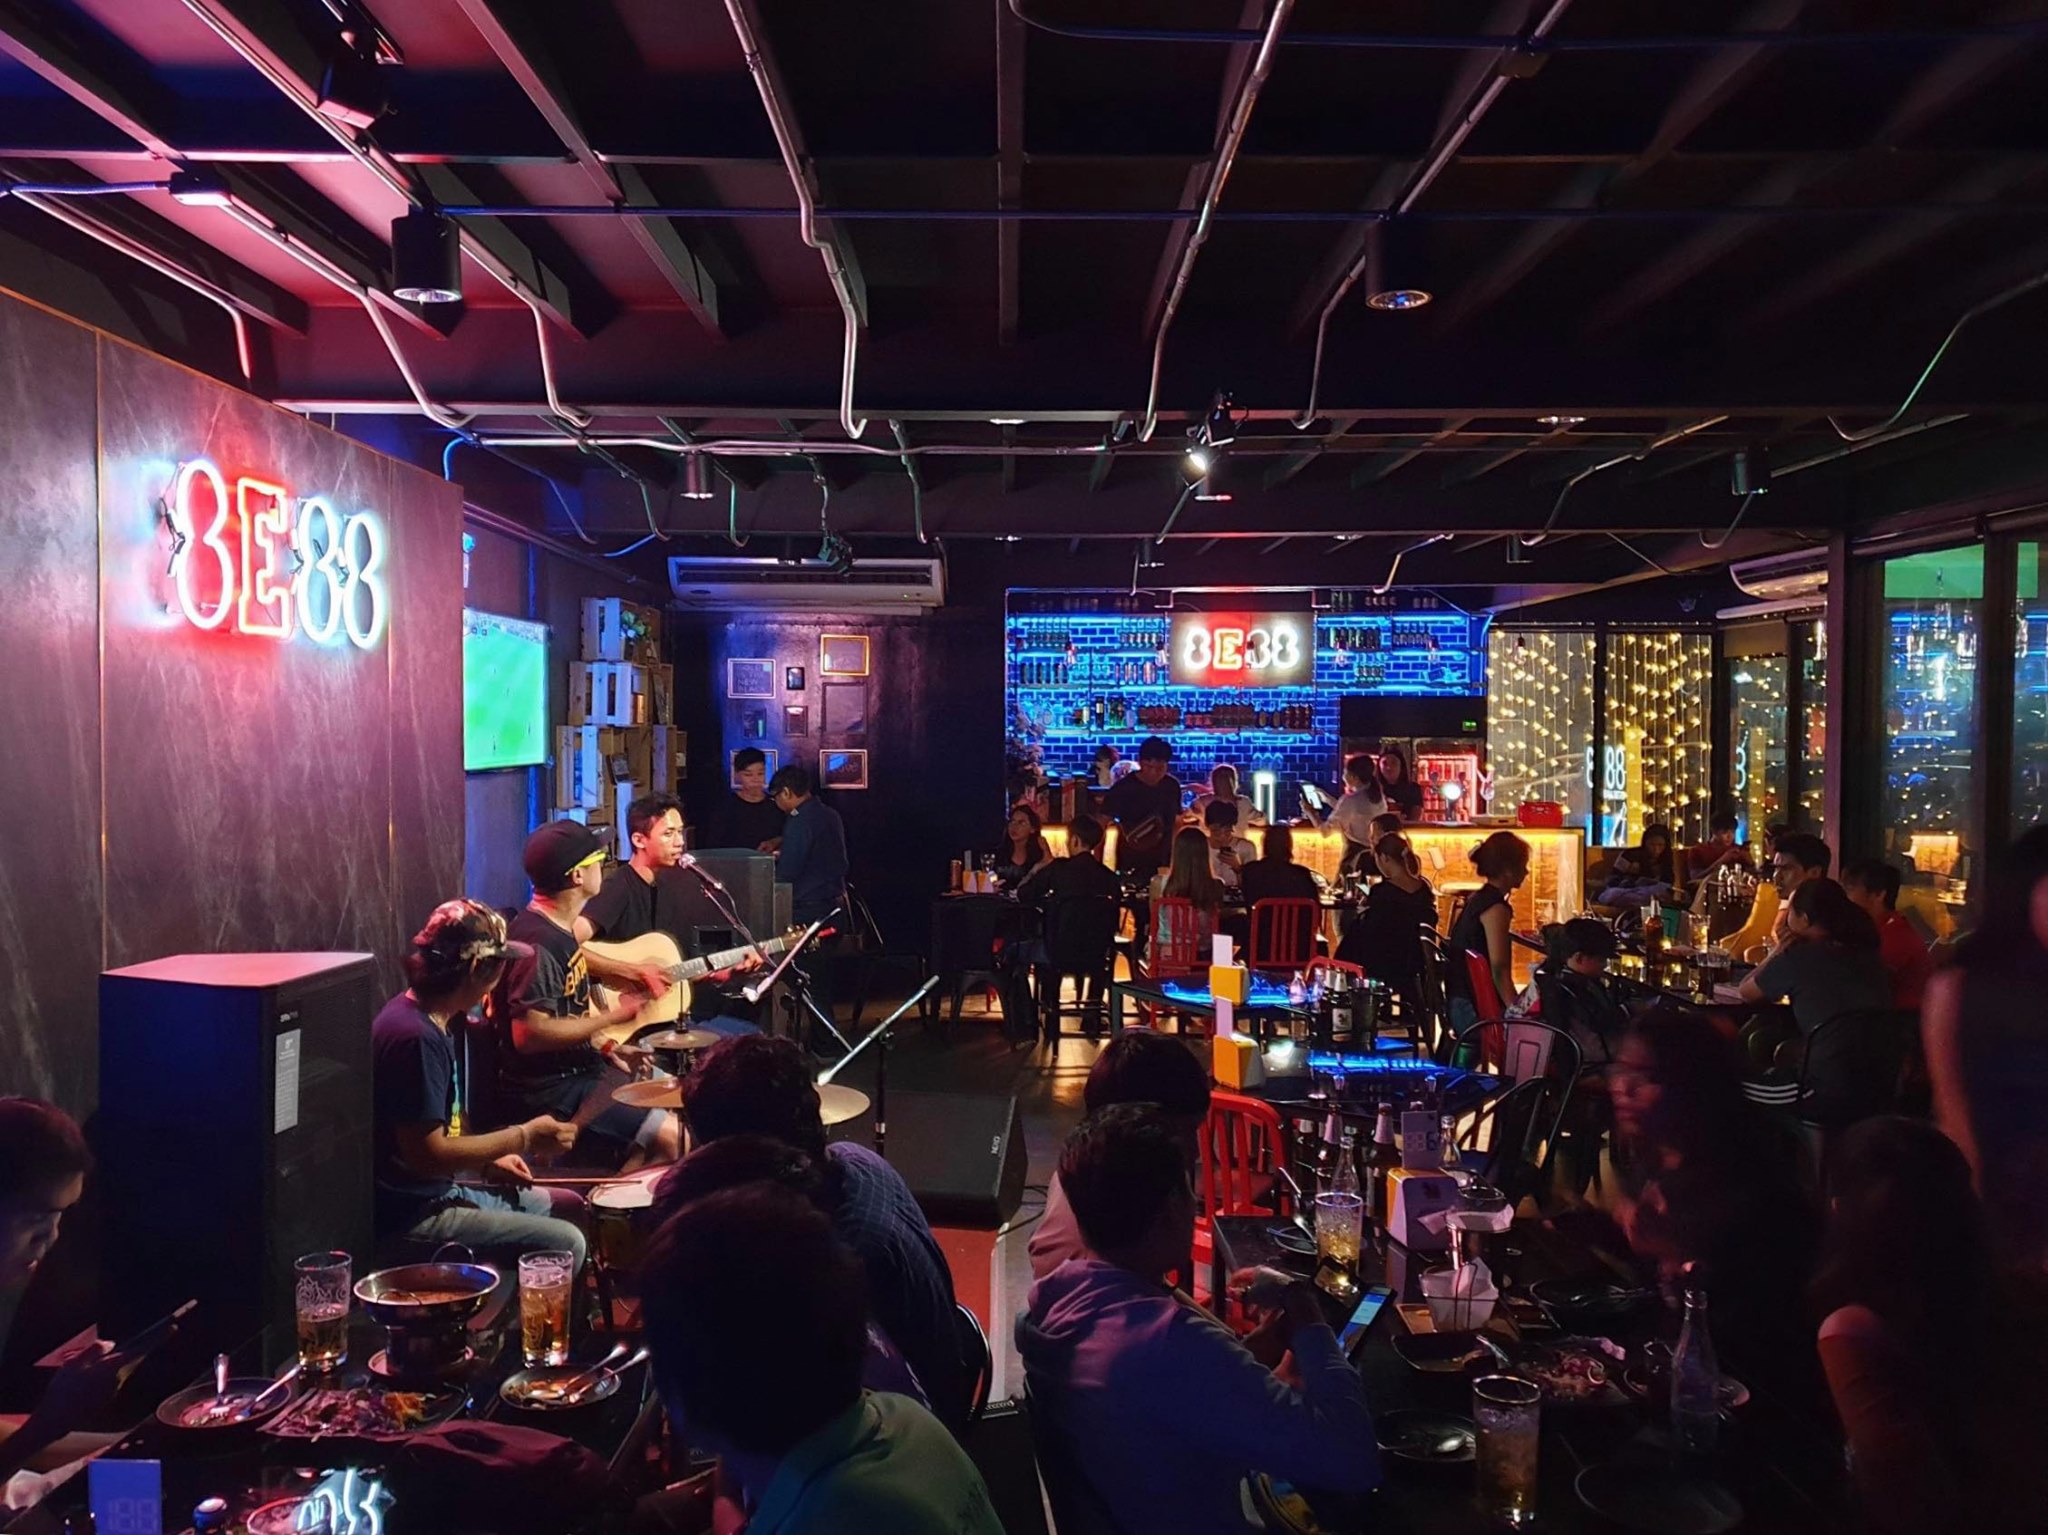 เอ้กอีเอ้กเอ้ก บาร์ แอนด์ บิสโทร (8E88 Bar and Bistro) : กรุงเทพมหานคร (Bangkok)